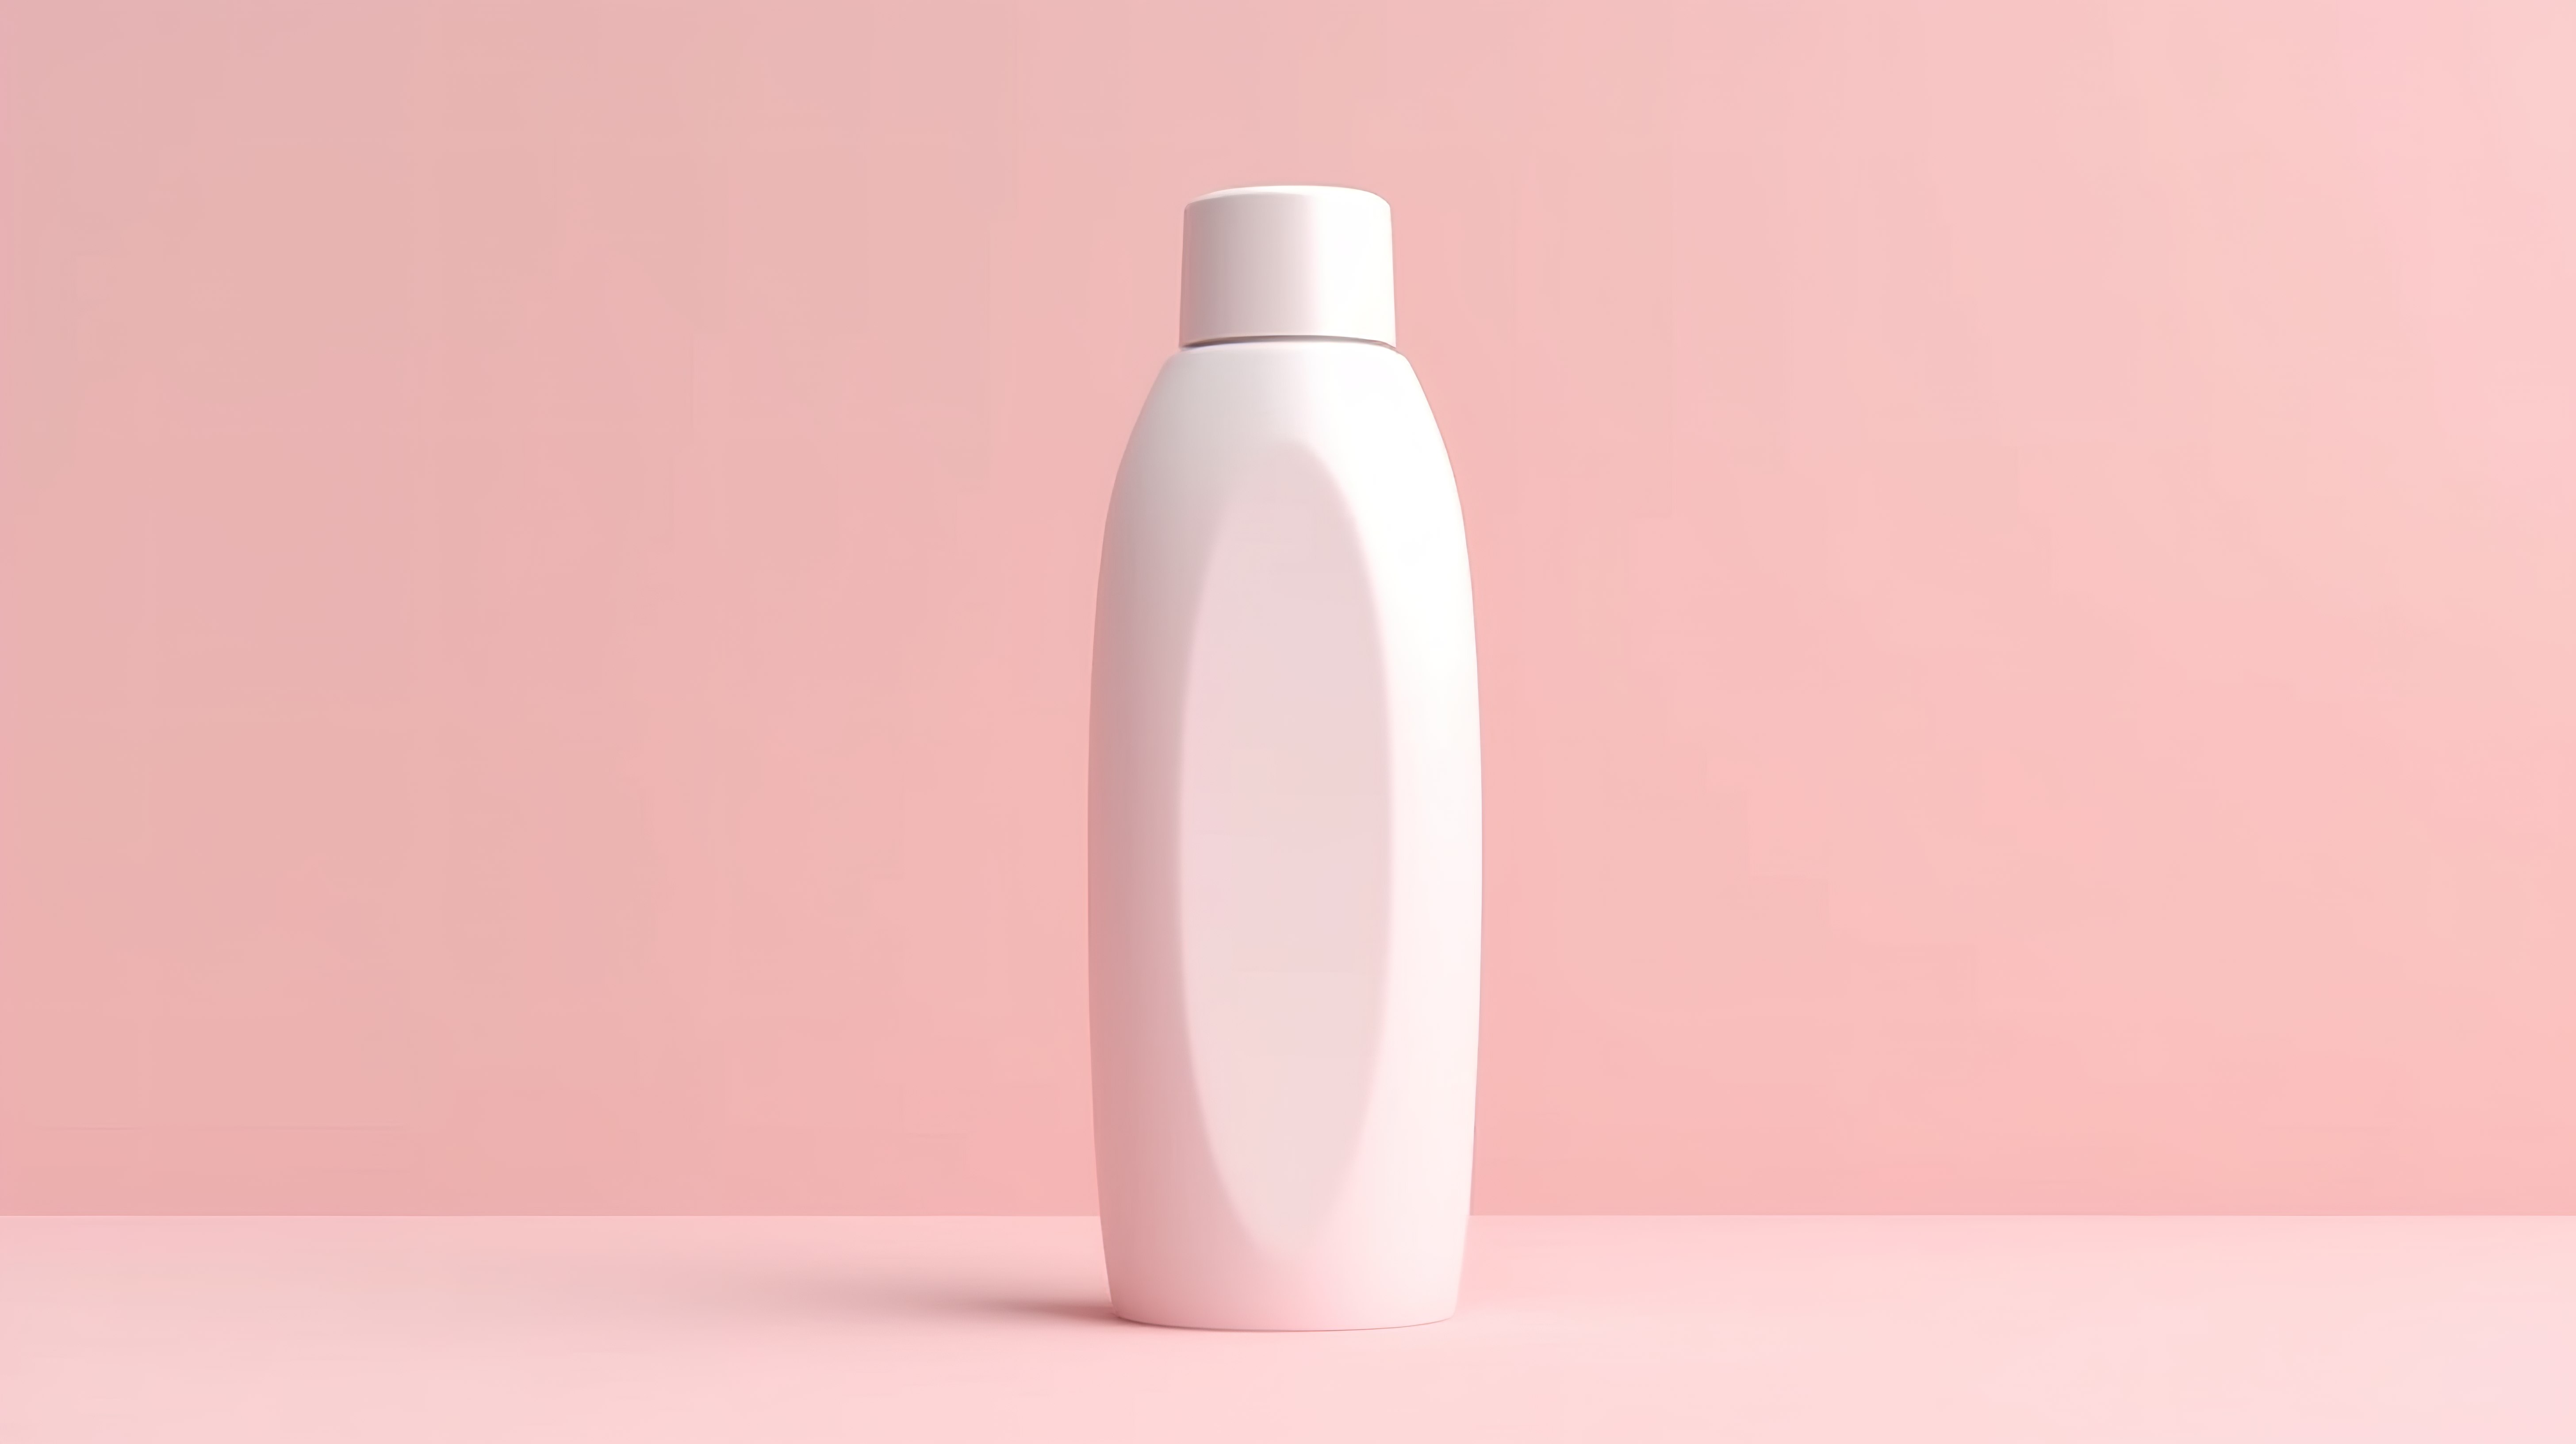 粉红色背景化妆品瓶的 3D 渲染图片